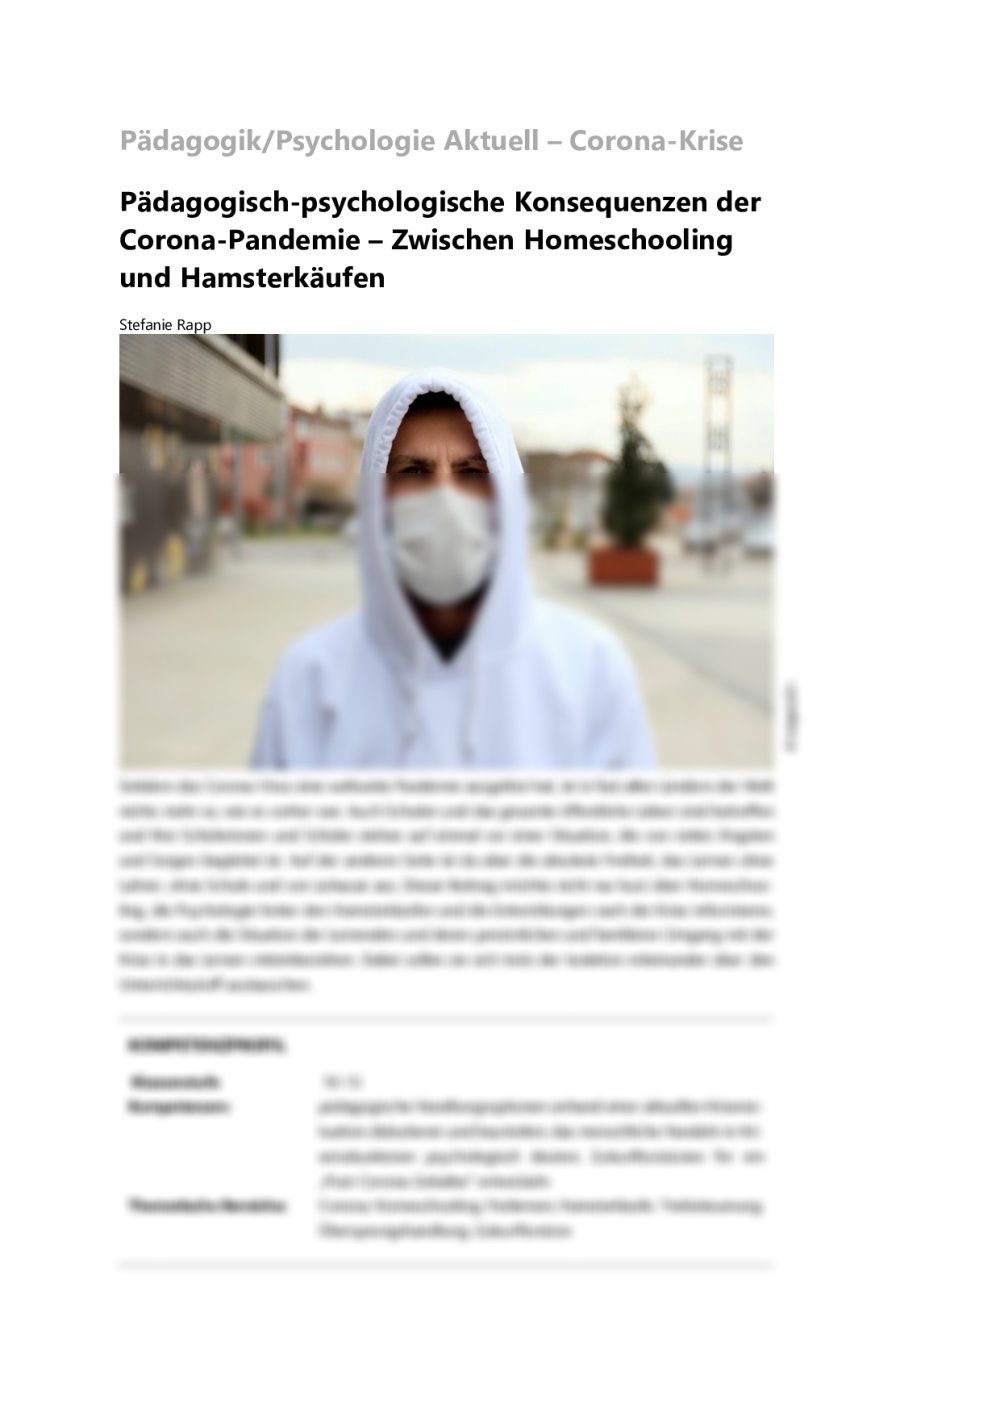 Pädagogisch-psychologische Konsequenzen der Corona-Pandemie - Seite 1